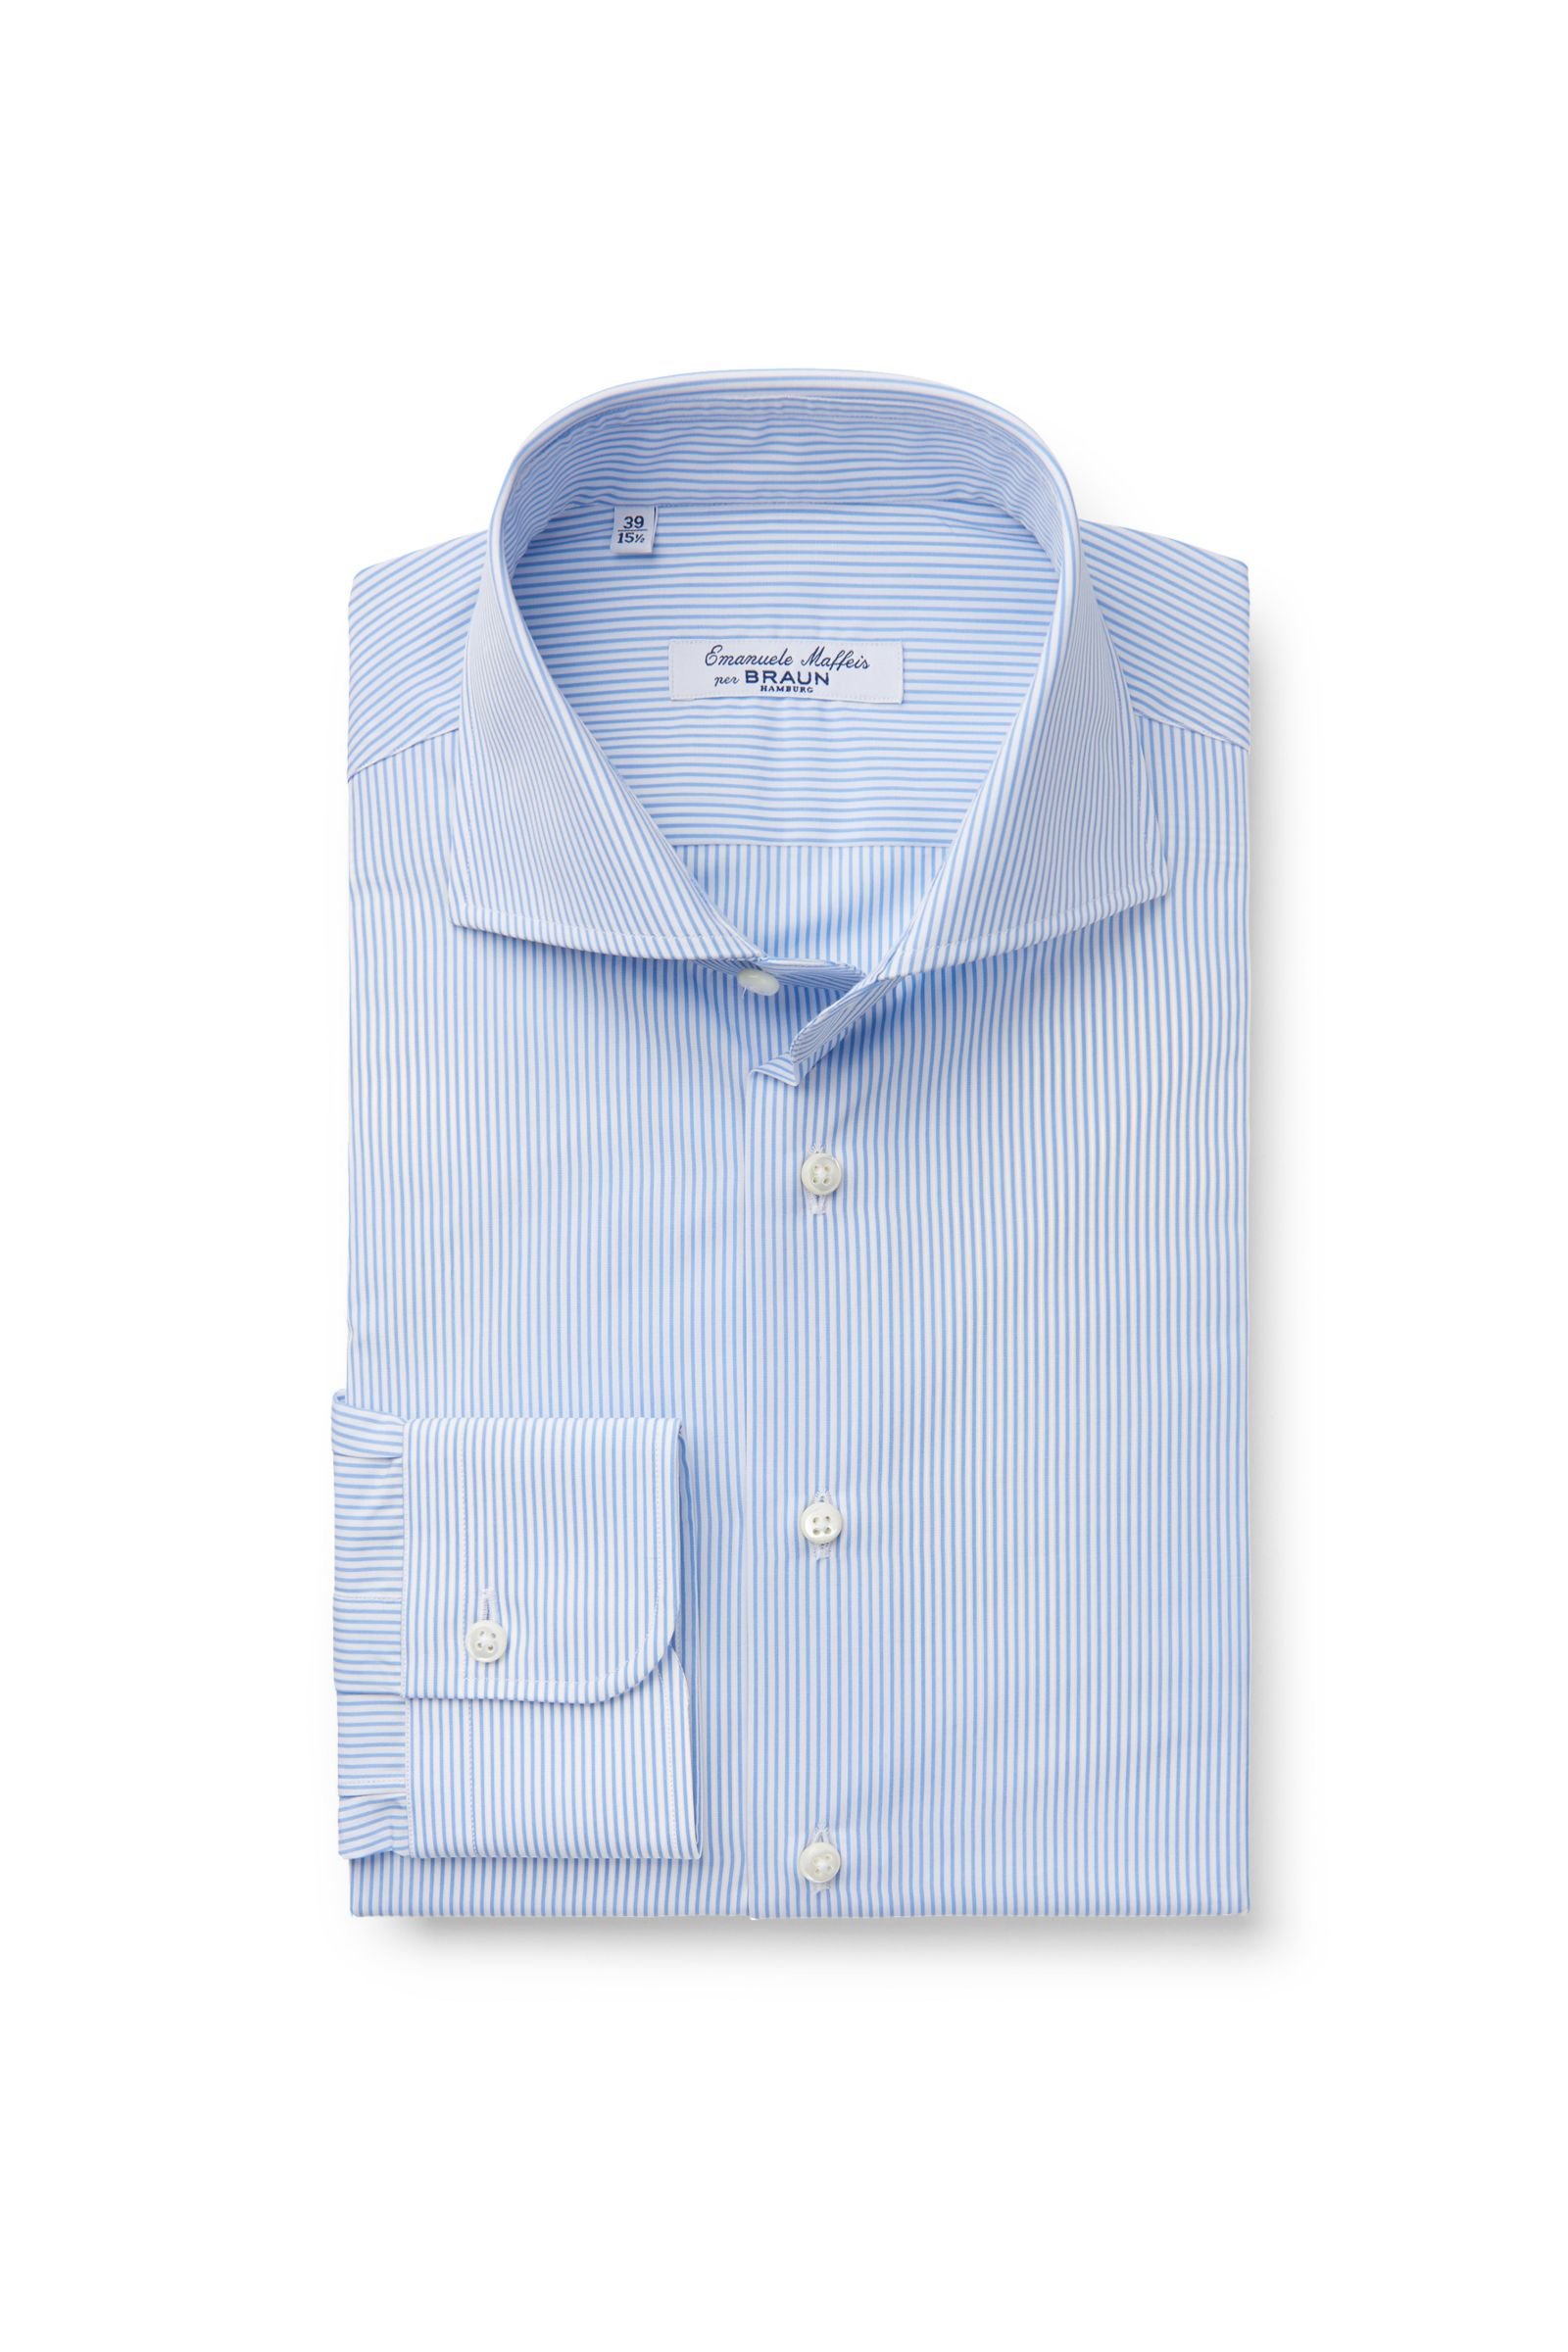 Business shirt 'Porto' shark collar smoky blue striped